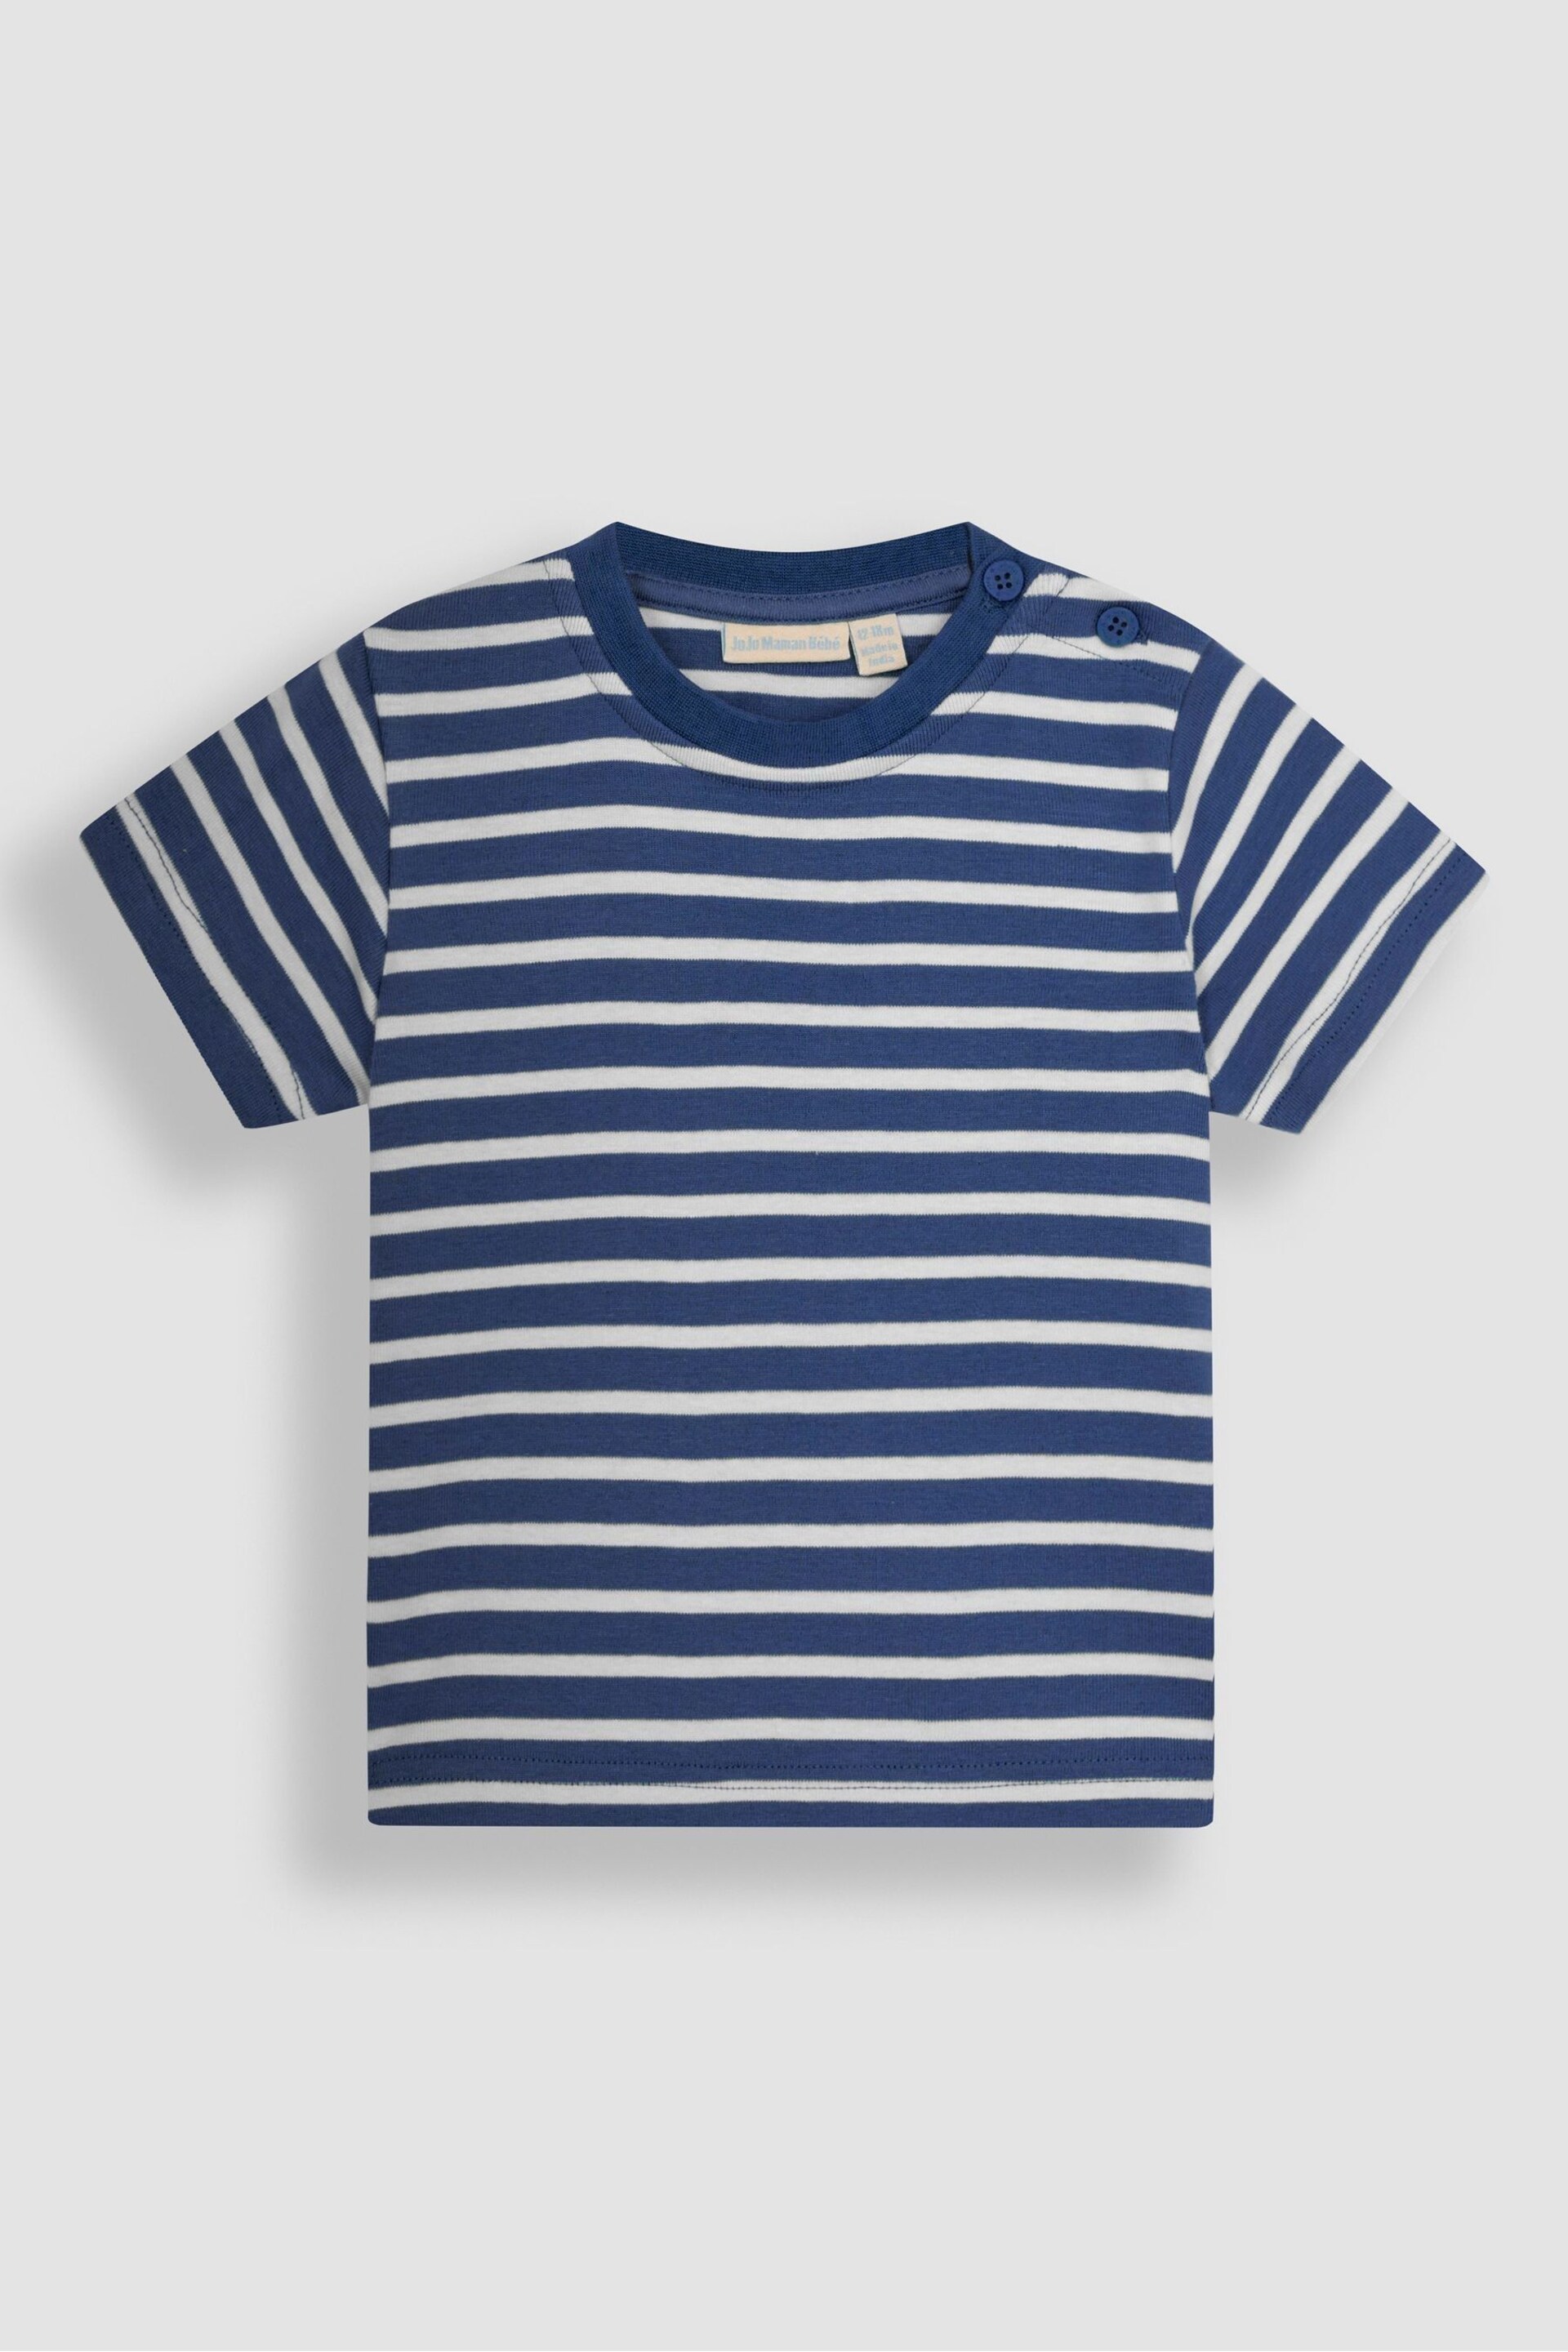 JoJo Maman Bébé Indigo Blue Stripe T-Shirt - Image 2 of 4